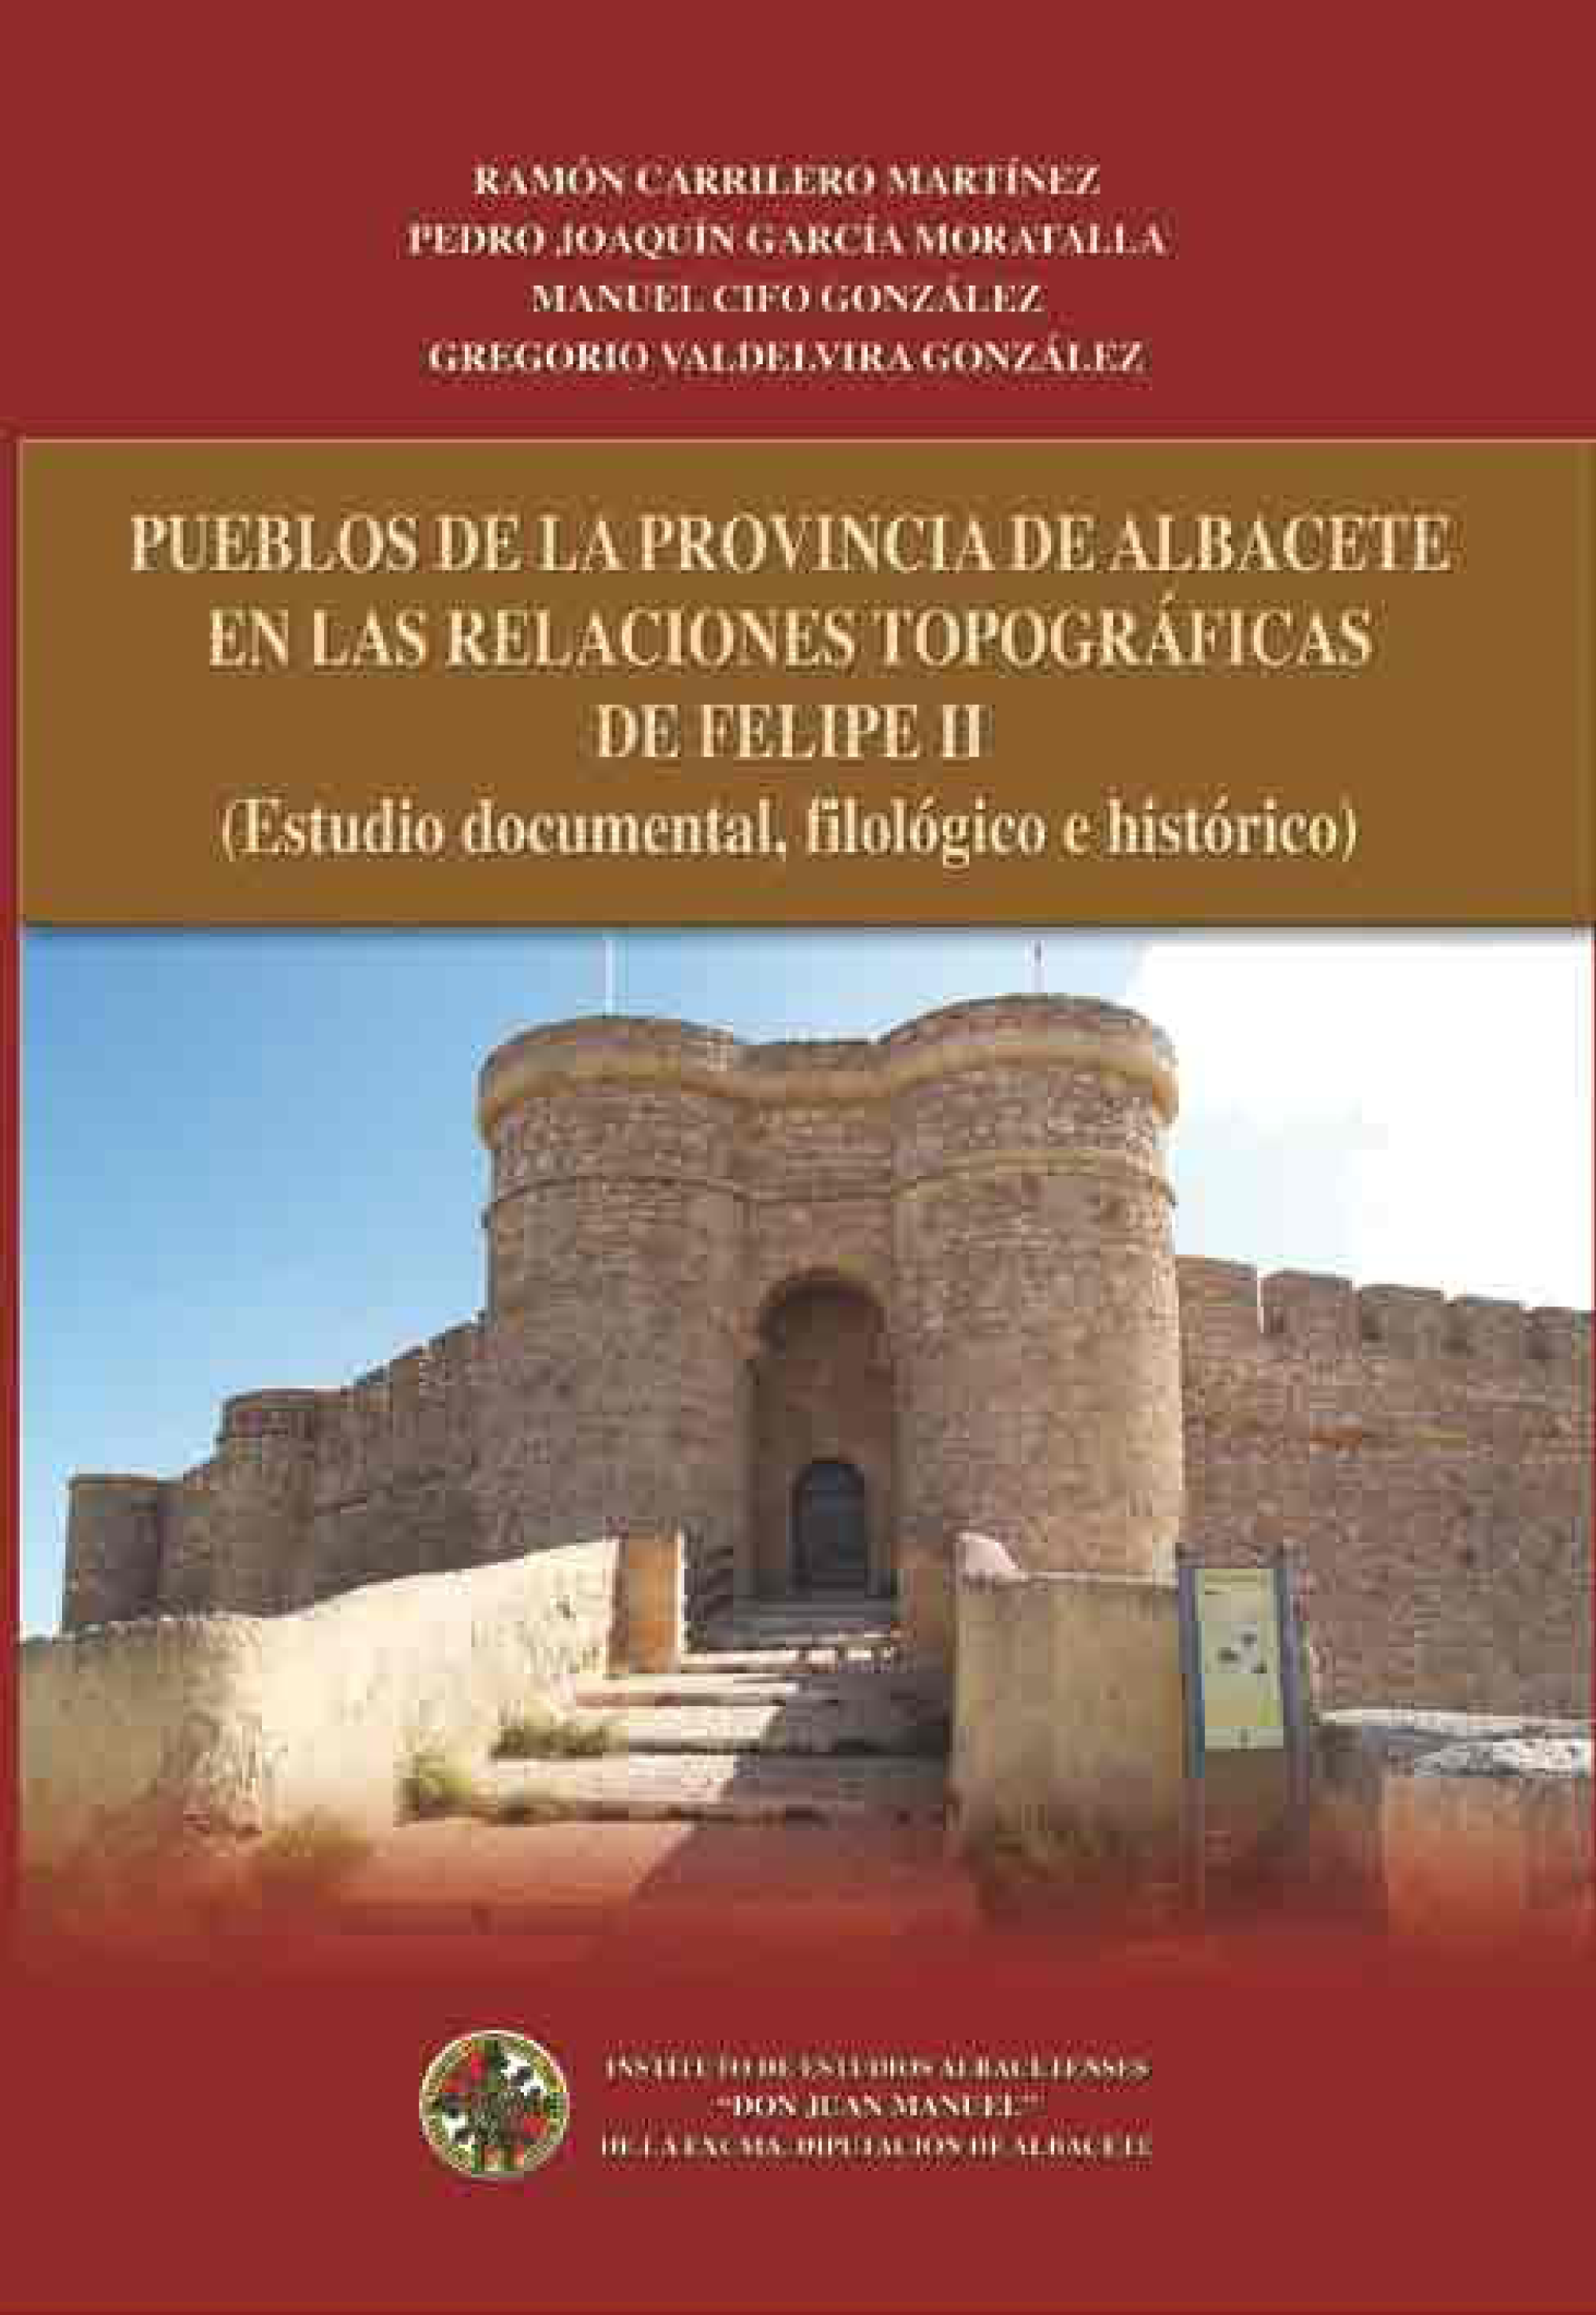 Imagen de portada del libro Pueblos de la provincia de Albacete en las relaciones topográficas de Felipe II